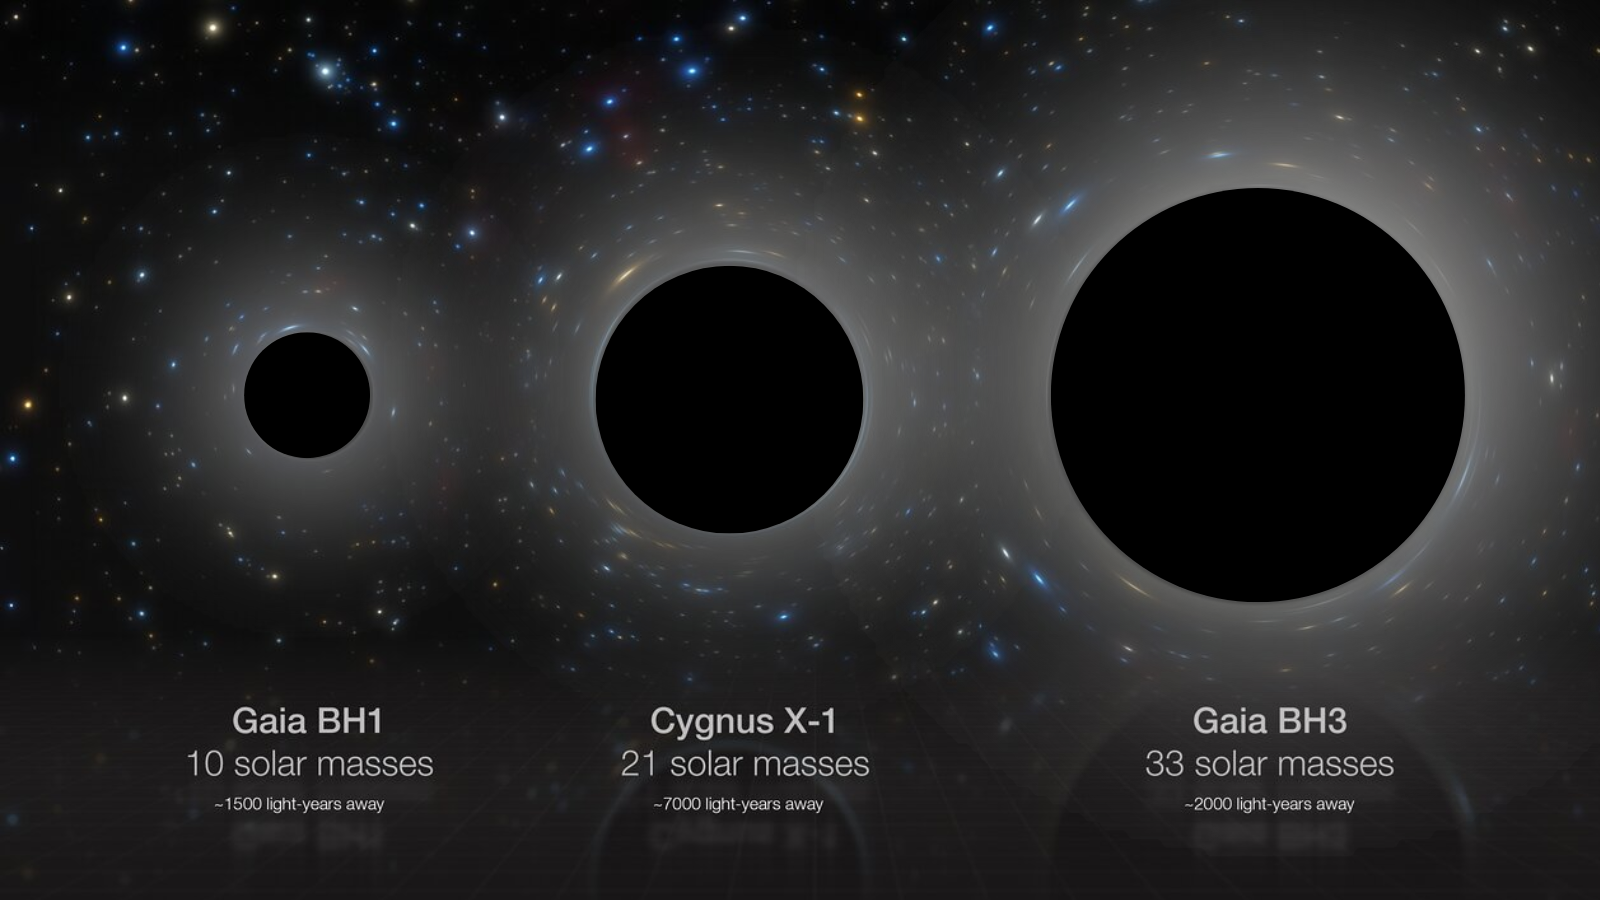 رسم تخطيطي يوضح مقارنة جنبًا إلى جنب لثلاثة ثقوب سوداء